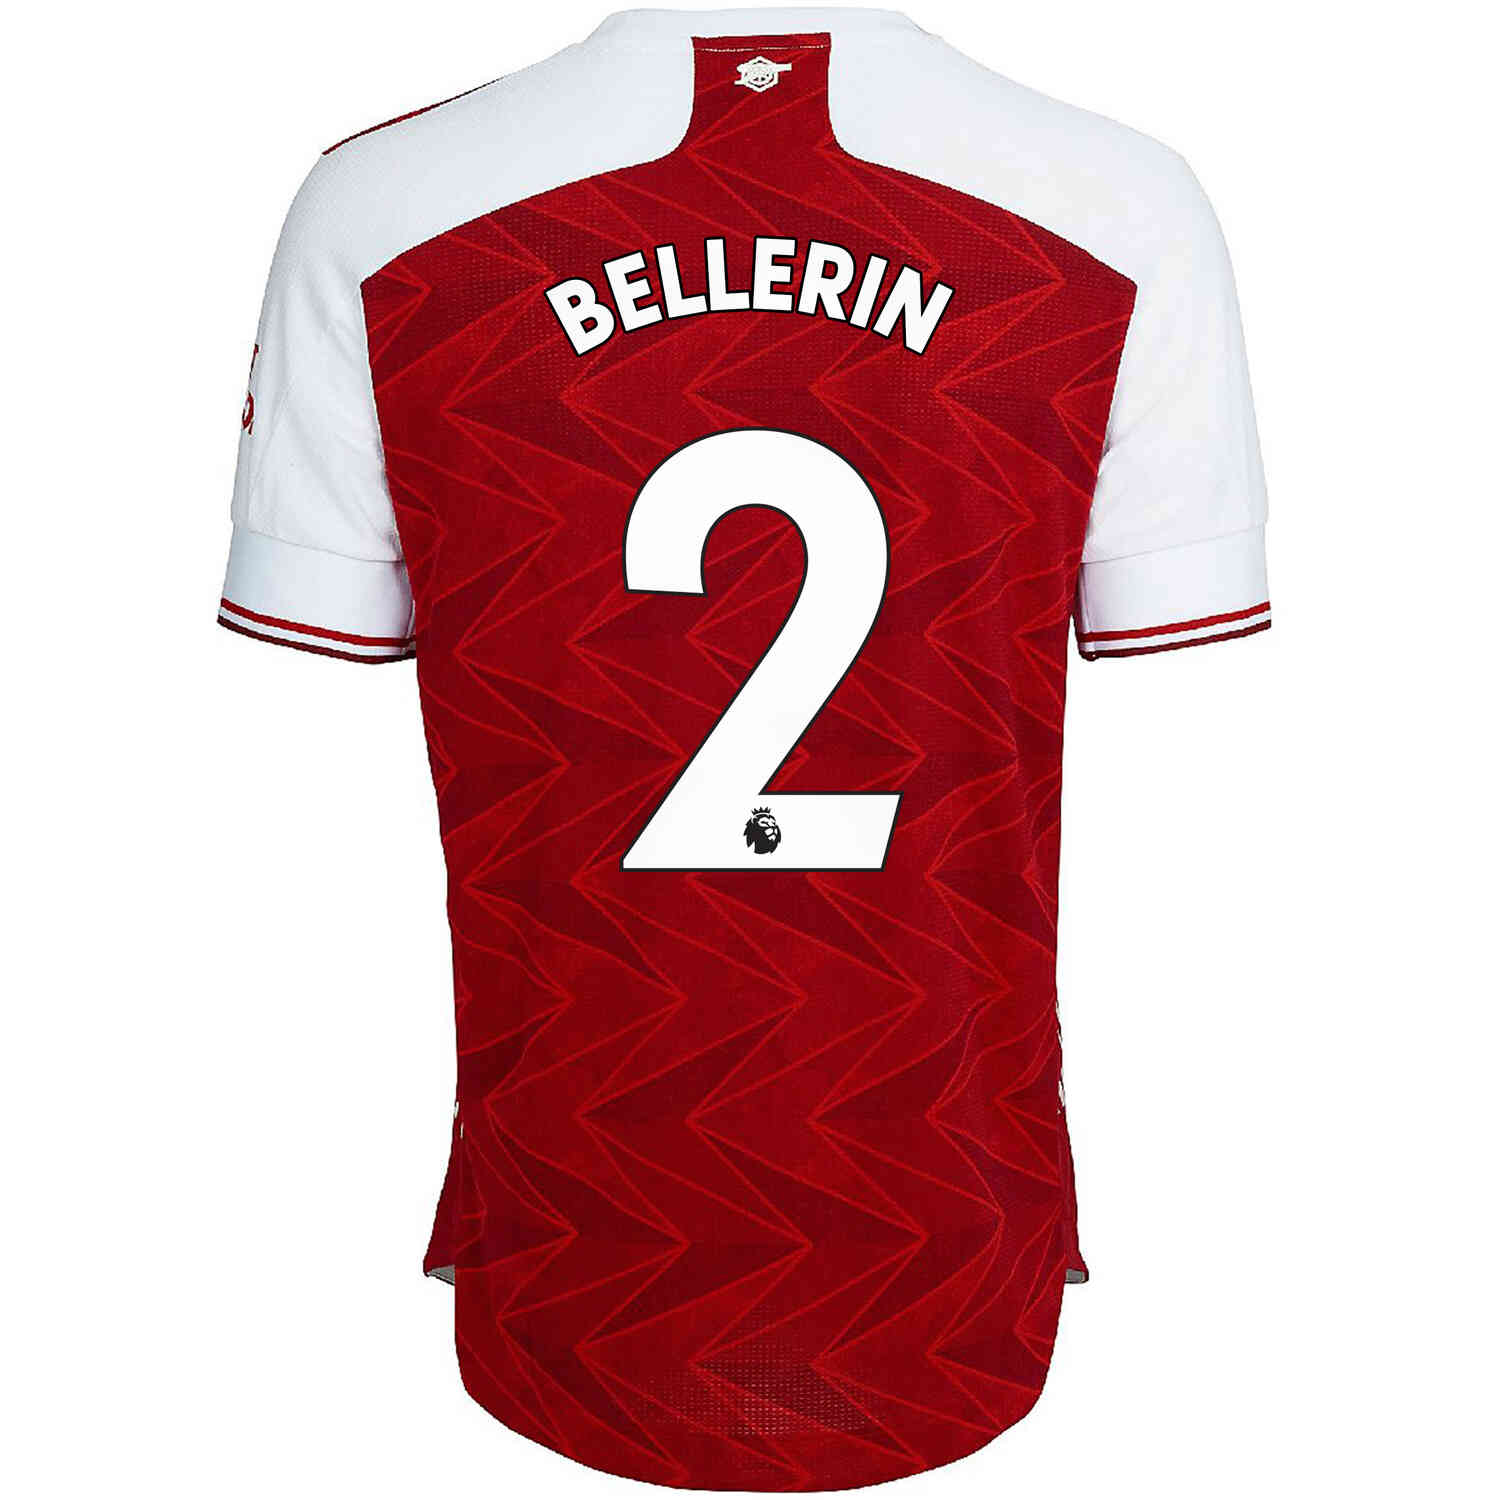 bellerin jersey number